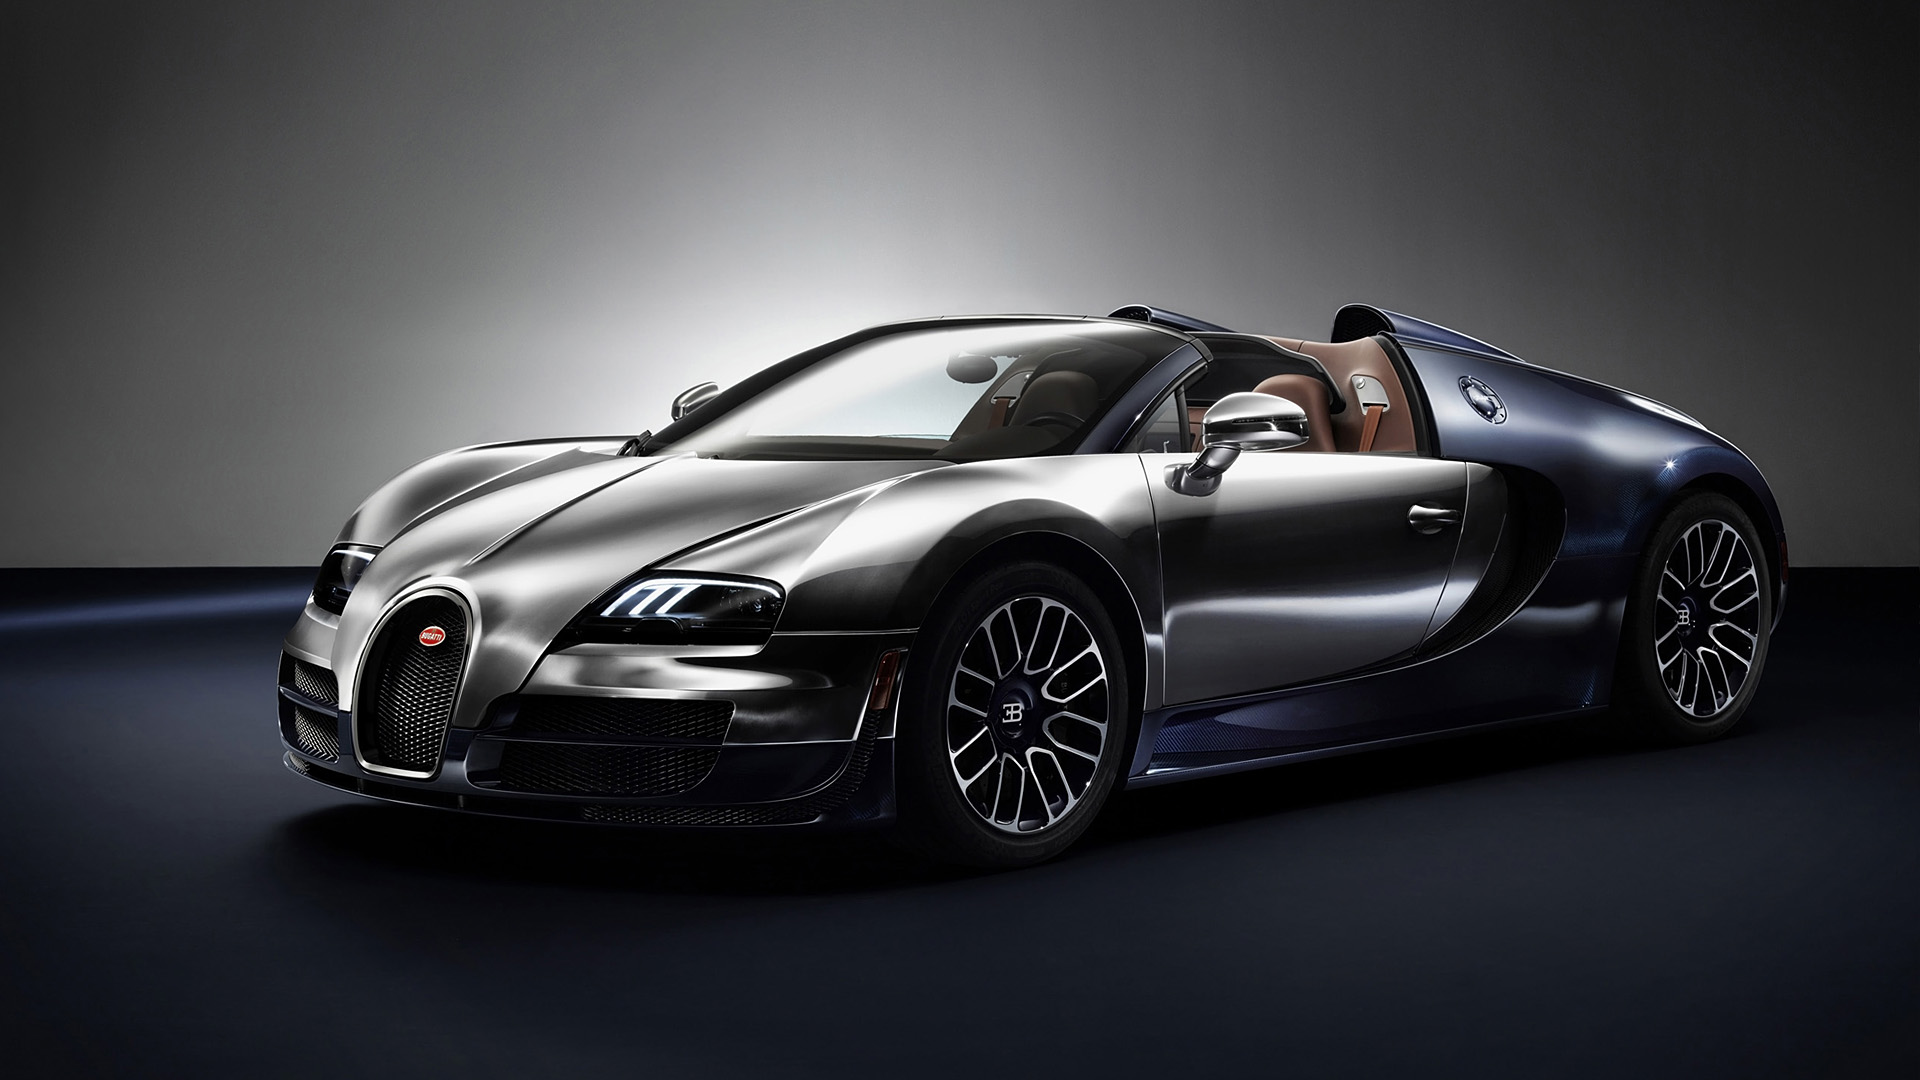  2014 Bugatti Veyron Ettore Bugatti Wallpaper.